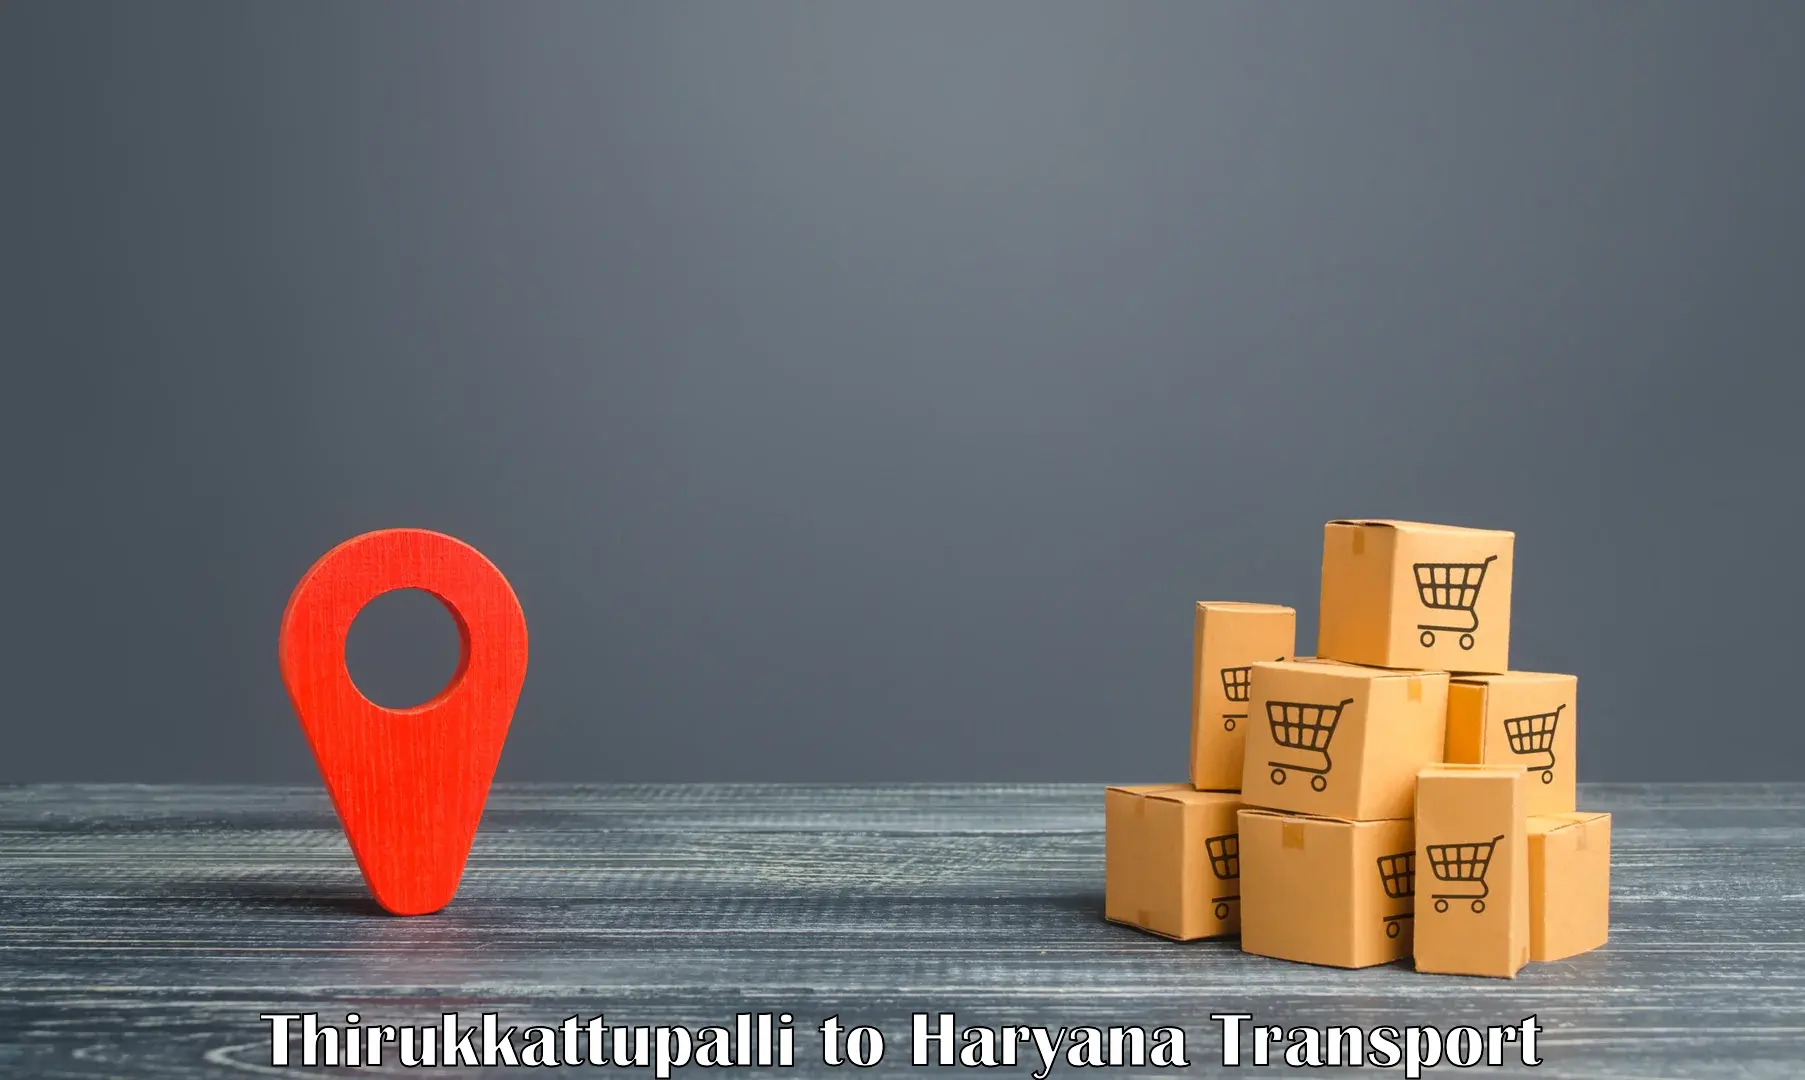 Truck transport companies in India Thirukkattupalli to Bhiwani